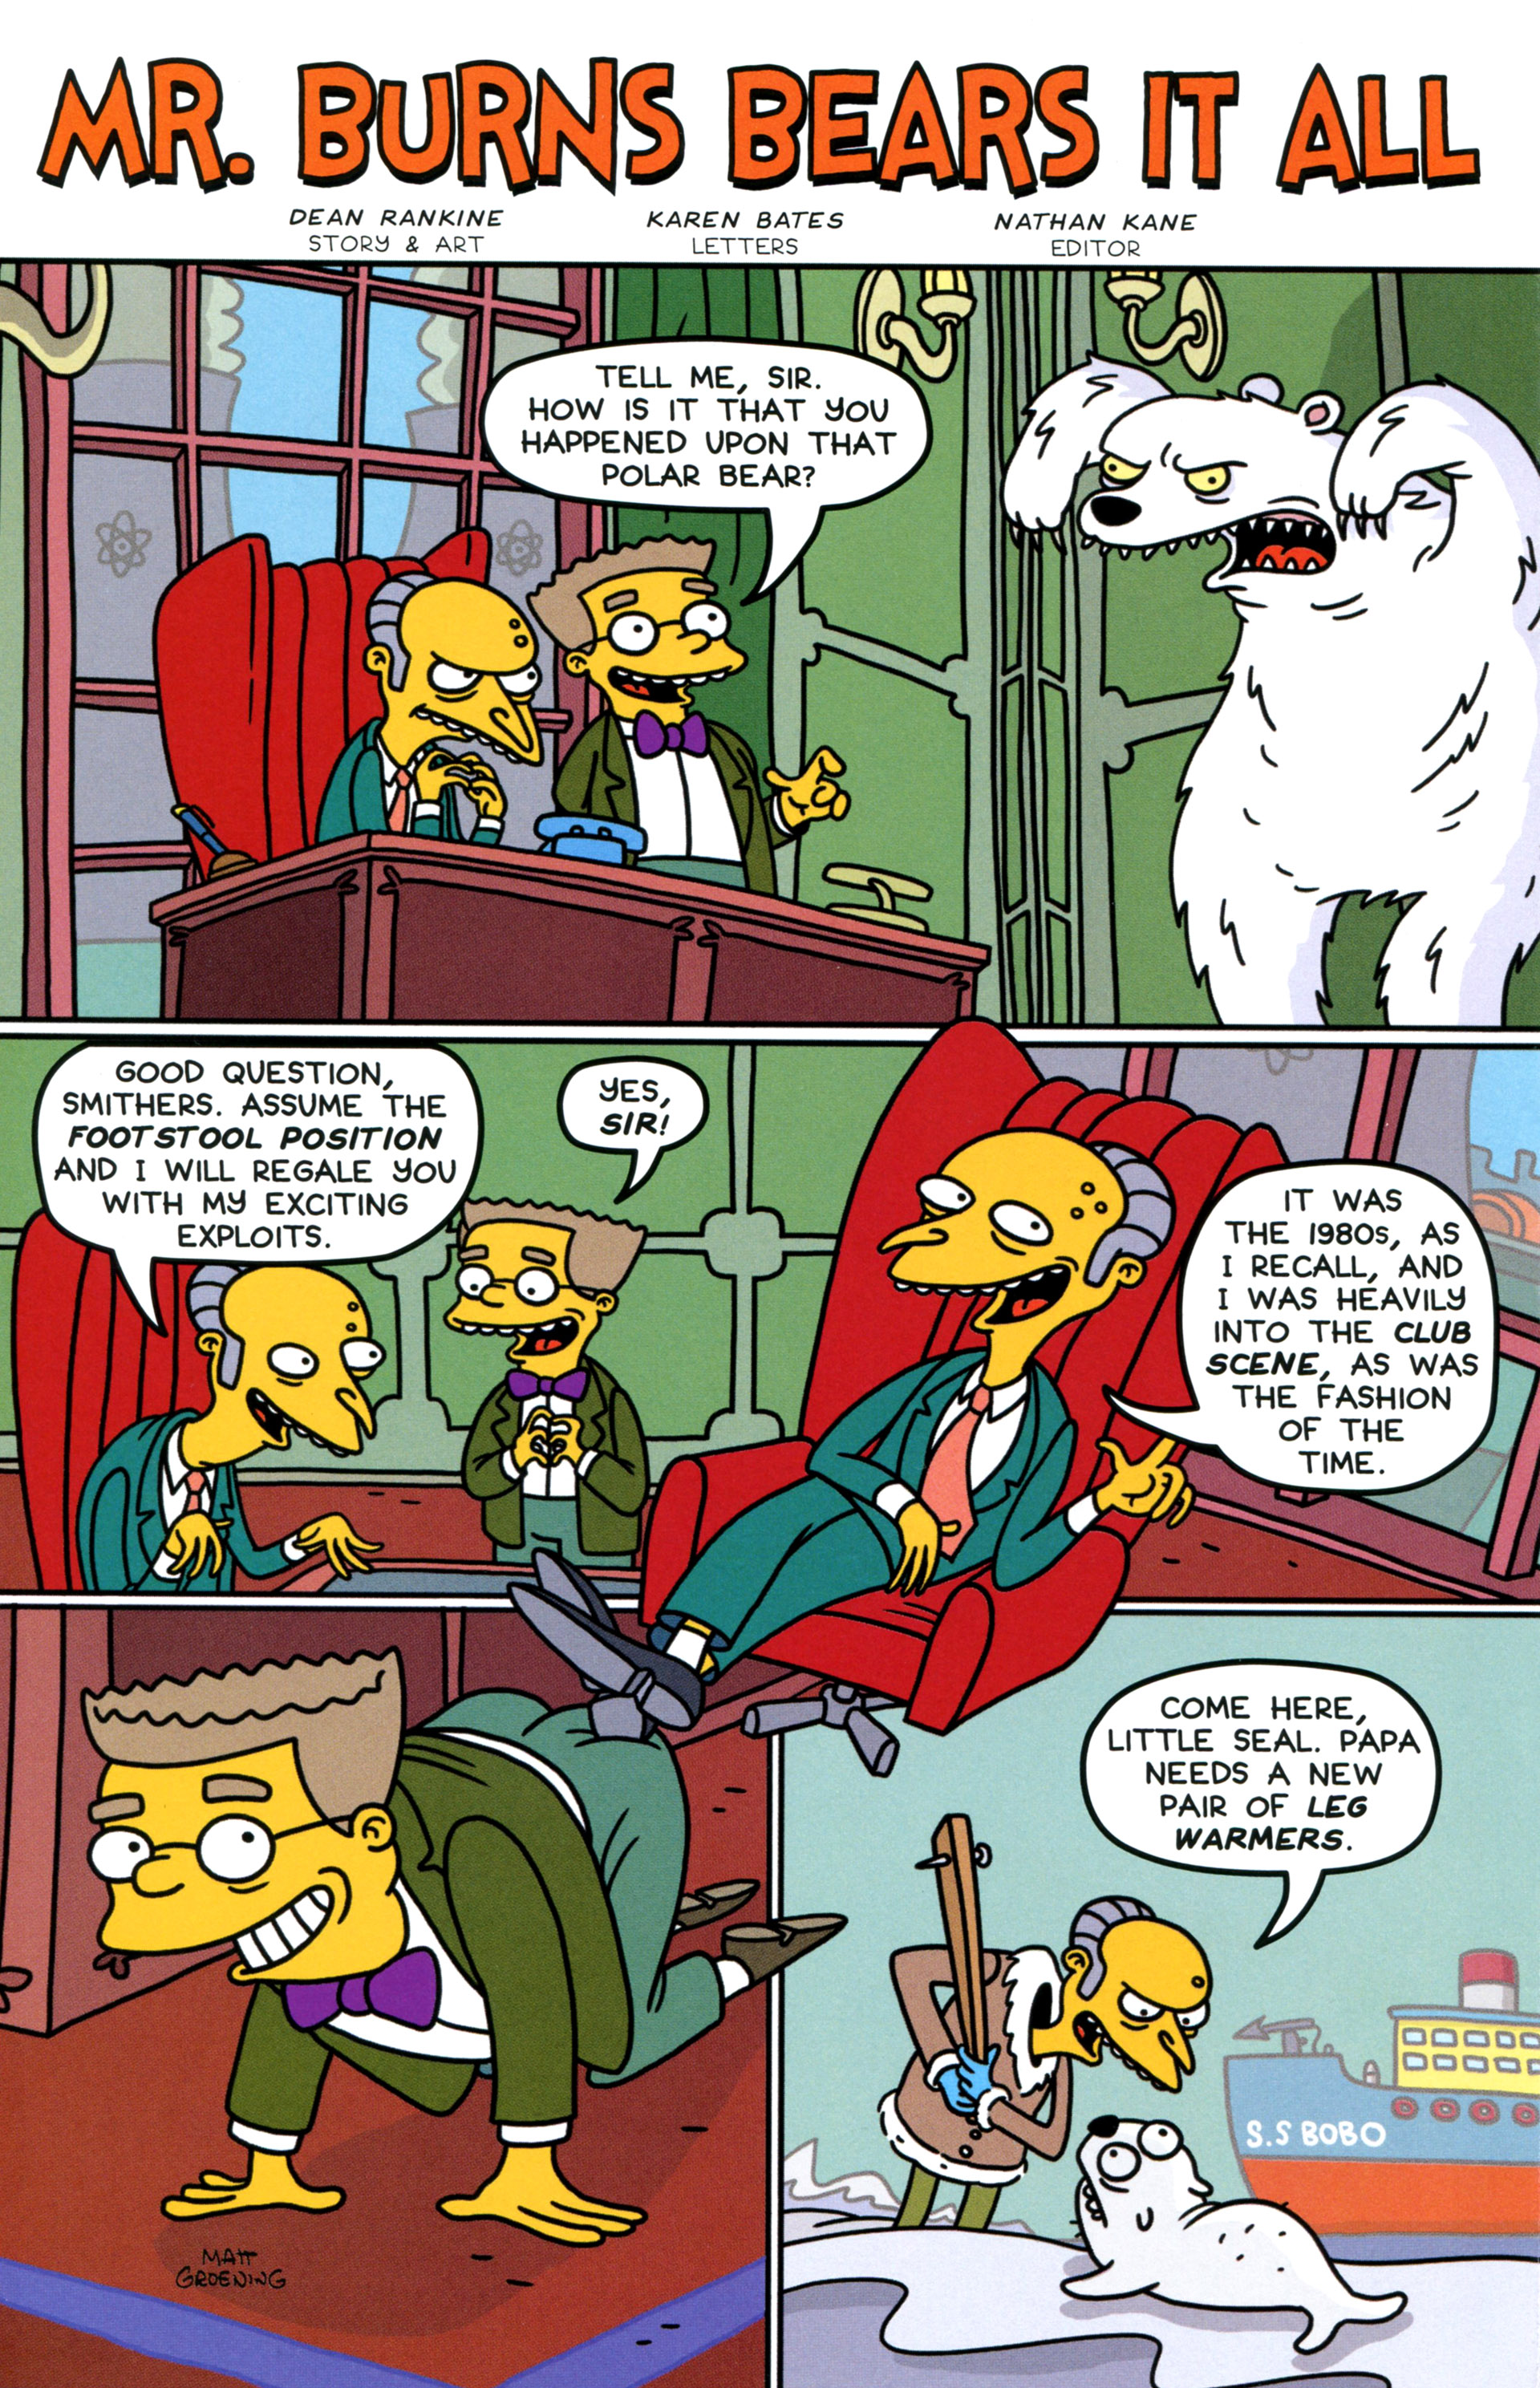 Burns Simpson Comics Erstausgabe One shot Nr.1 Bagged und boarded Mr